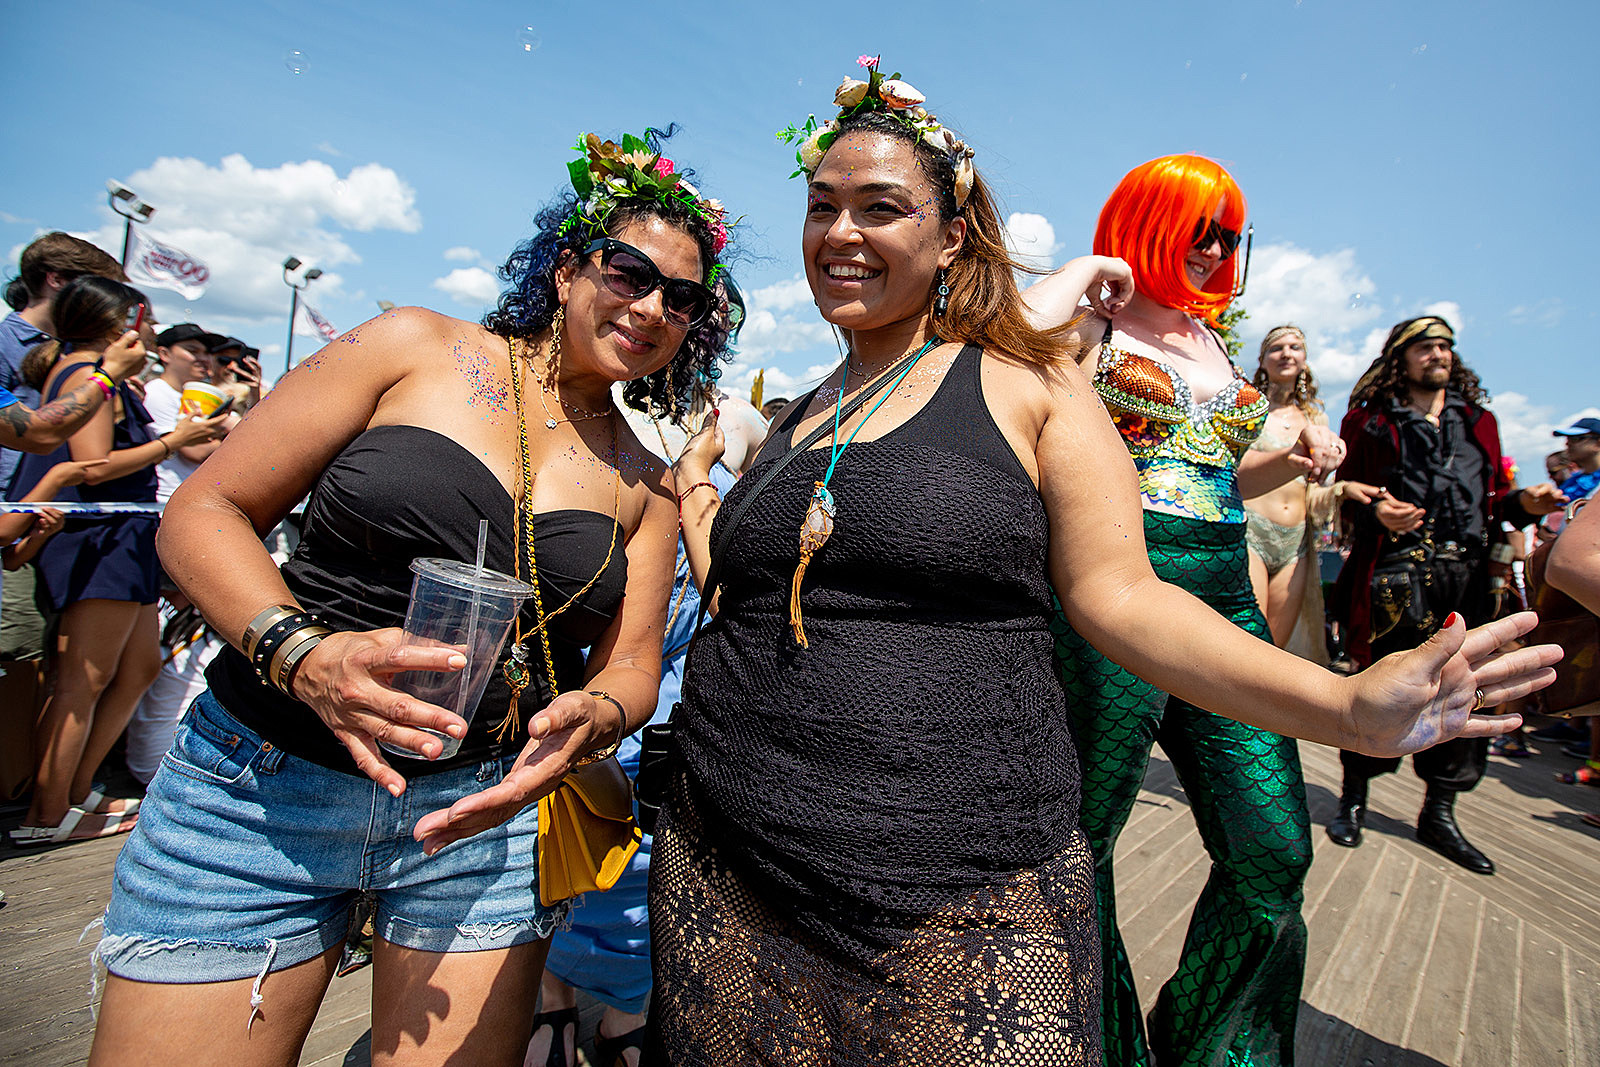 The 2019 Coney Island Mermaid Parade